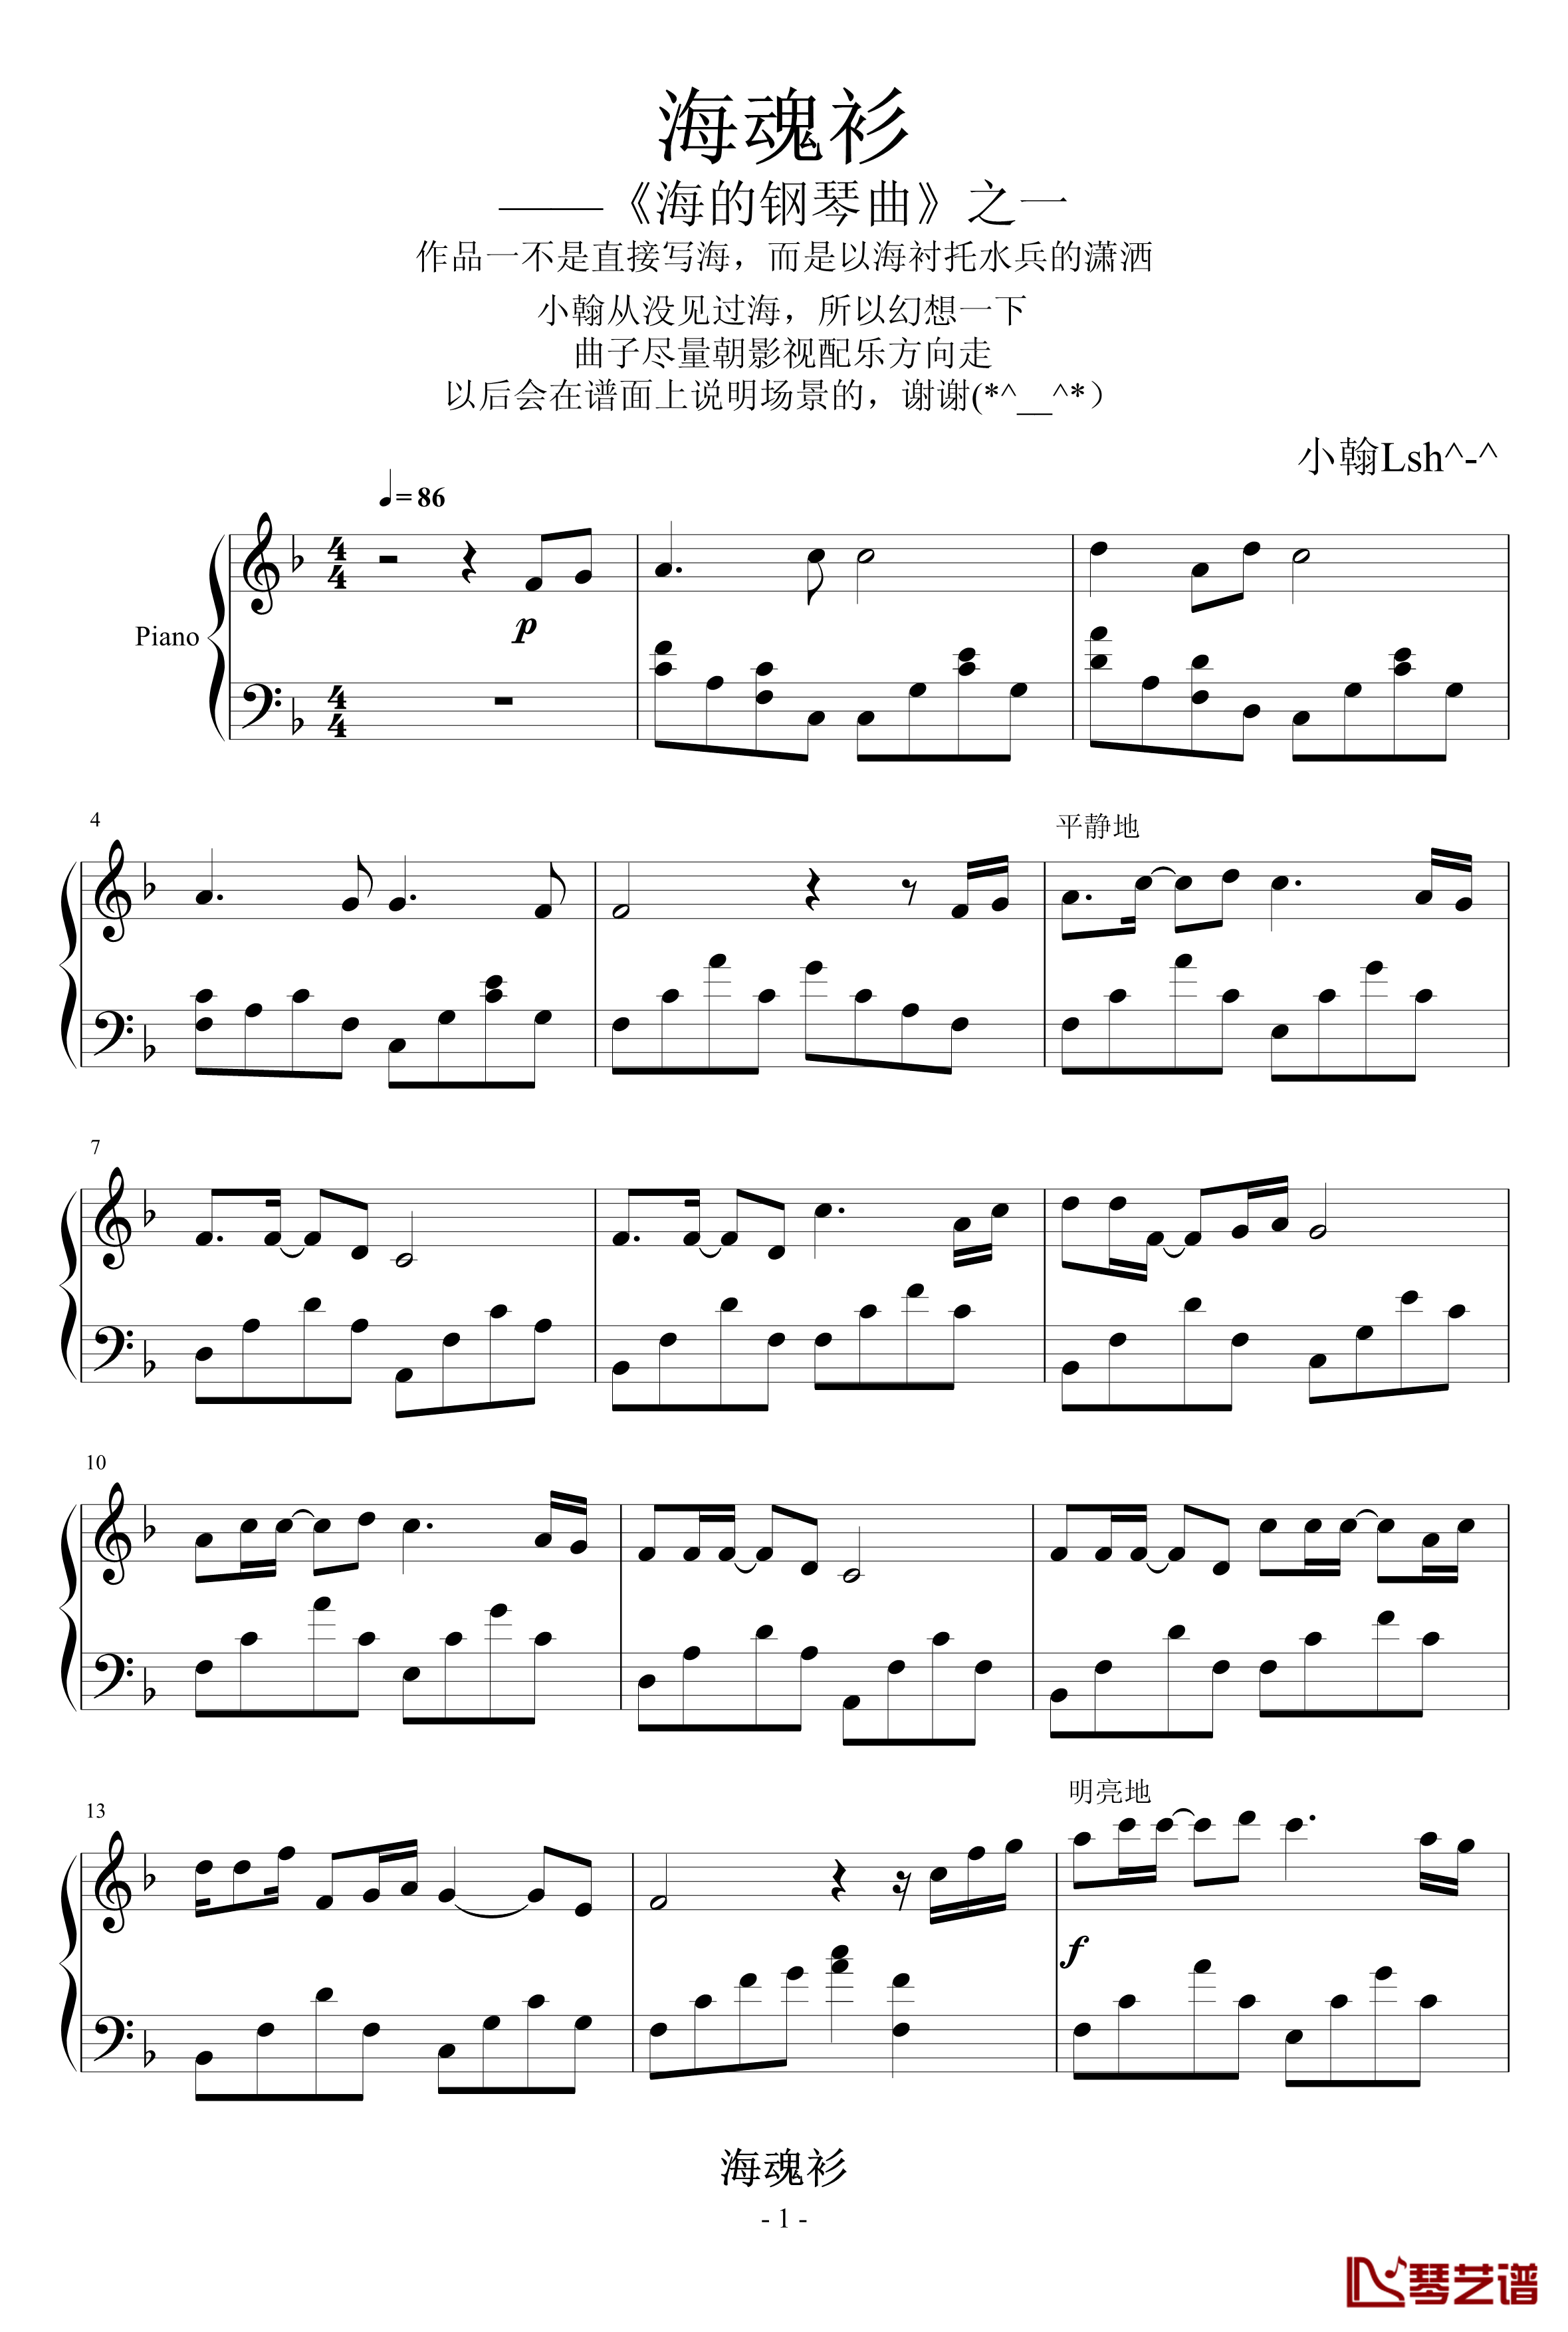 海魂衫钢琴谱-绿诗翰-海的钢琴曲1